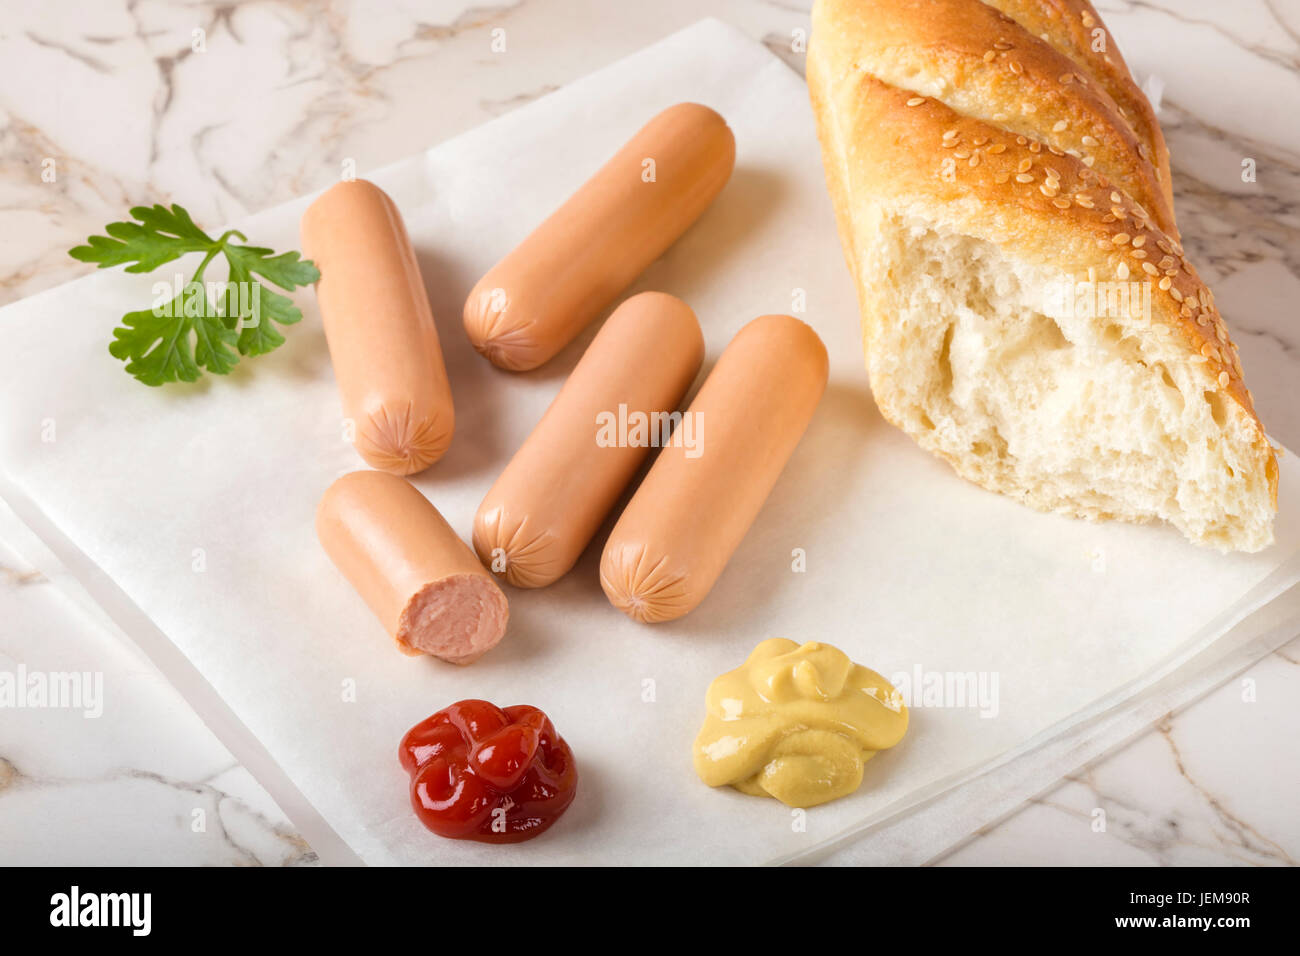 Saucisses (Frankfurter) sur table rustique avec du pain, de la moutarde et du ketchup Banque D'Images